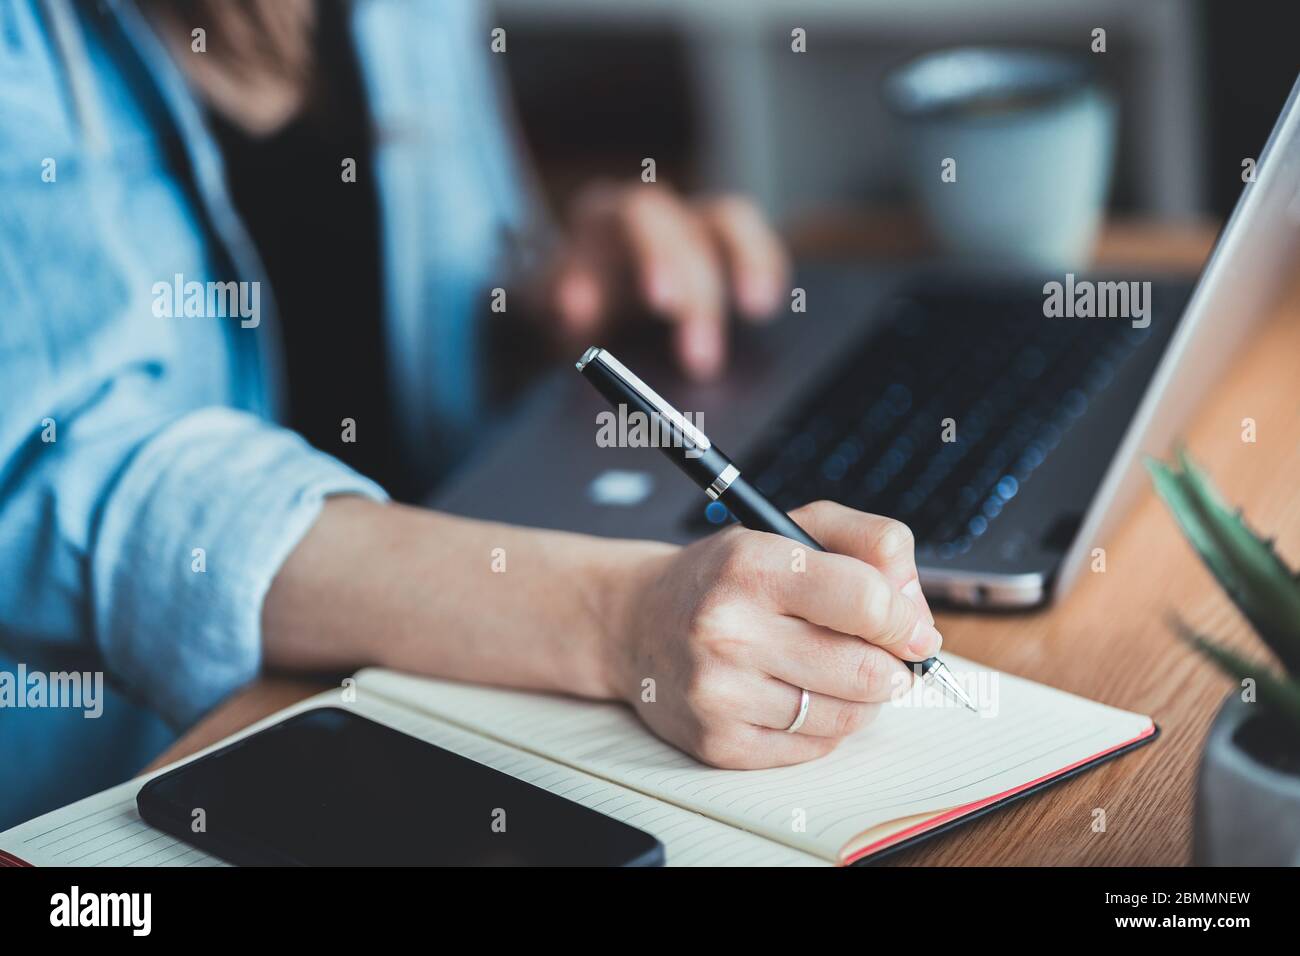 Giovane donna che si siede alla scrivania, scorre sul notebook e prende appunti sul notebook. Primo piano della scrittura a mano con la penna Foto Stock